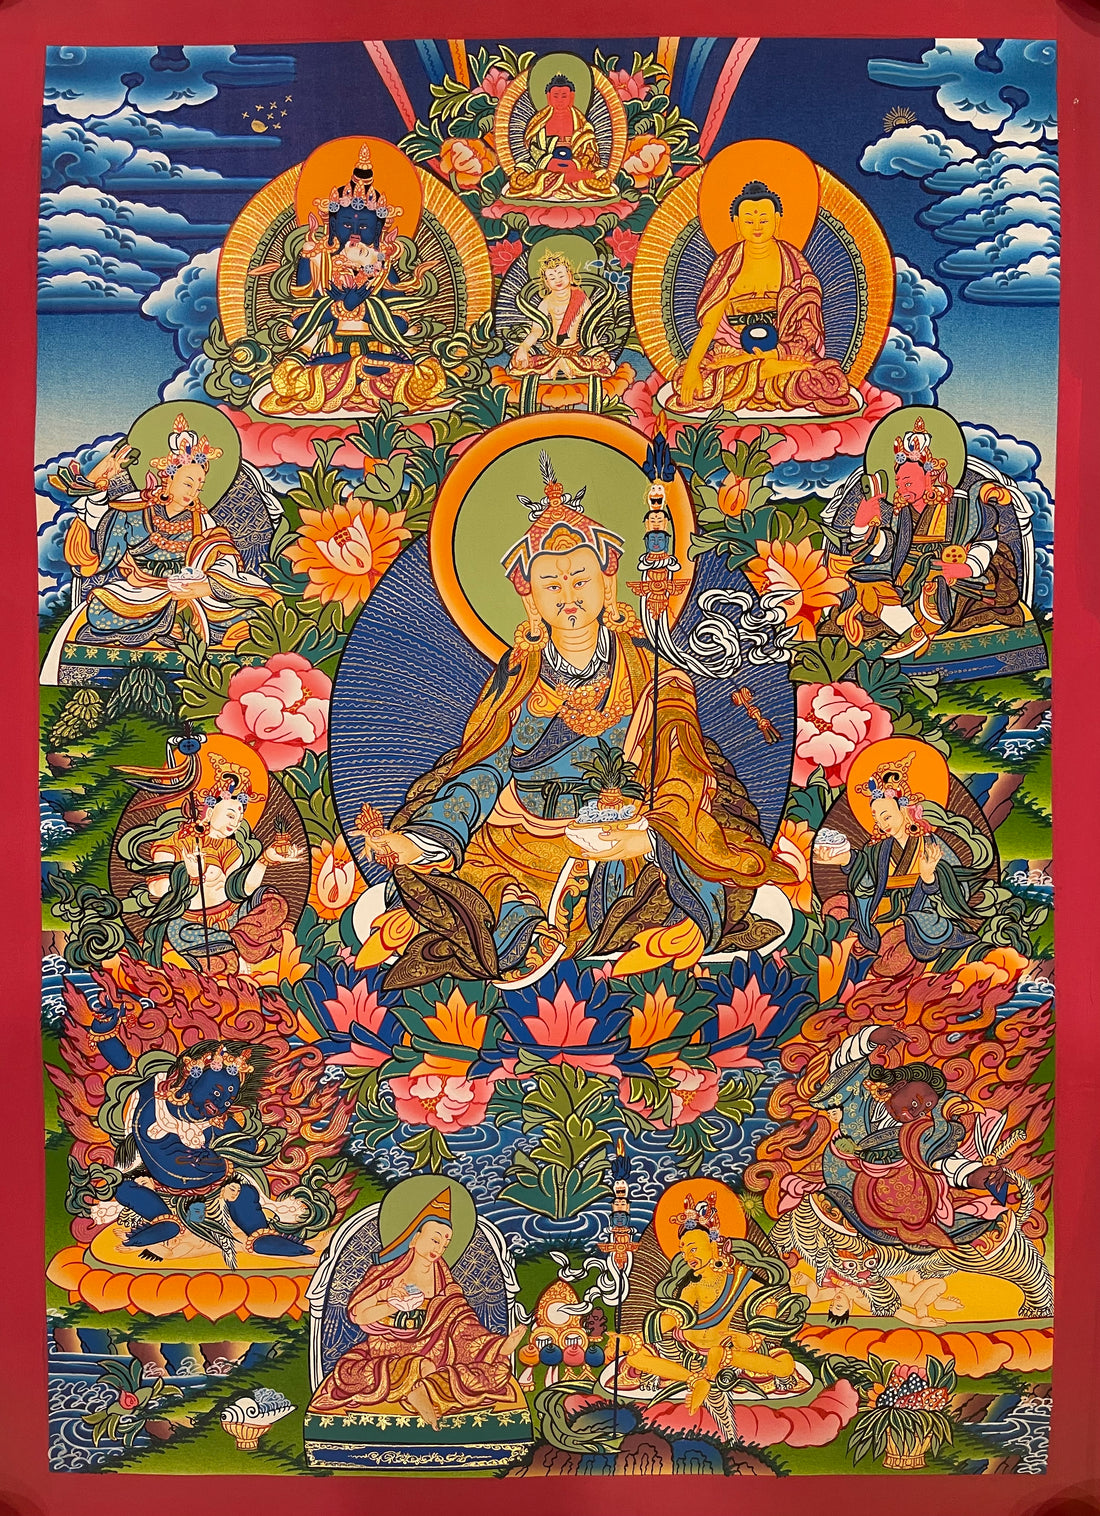 Padmasambhava aka Guru Rinpoche